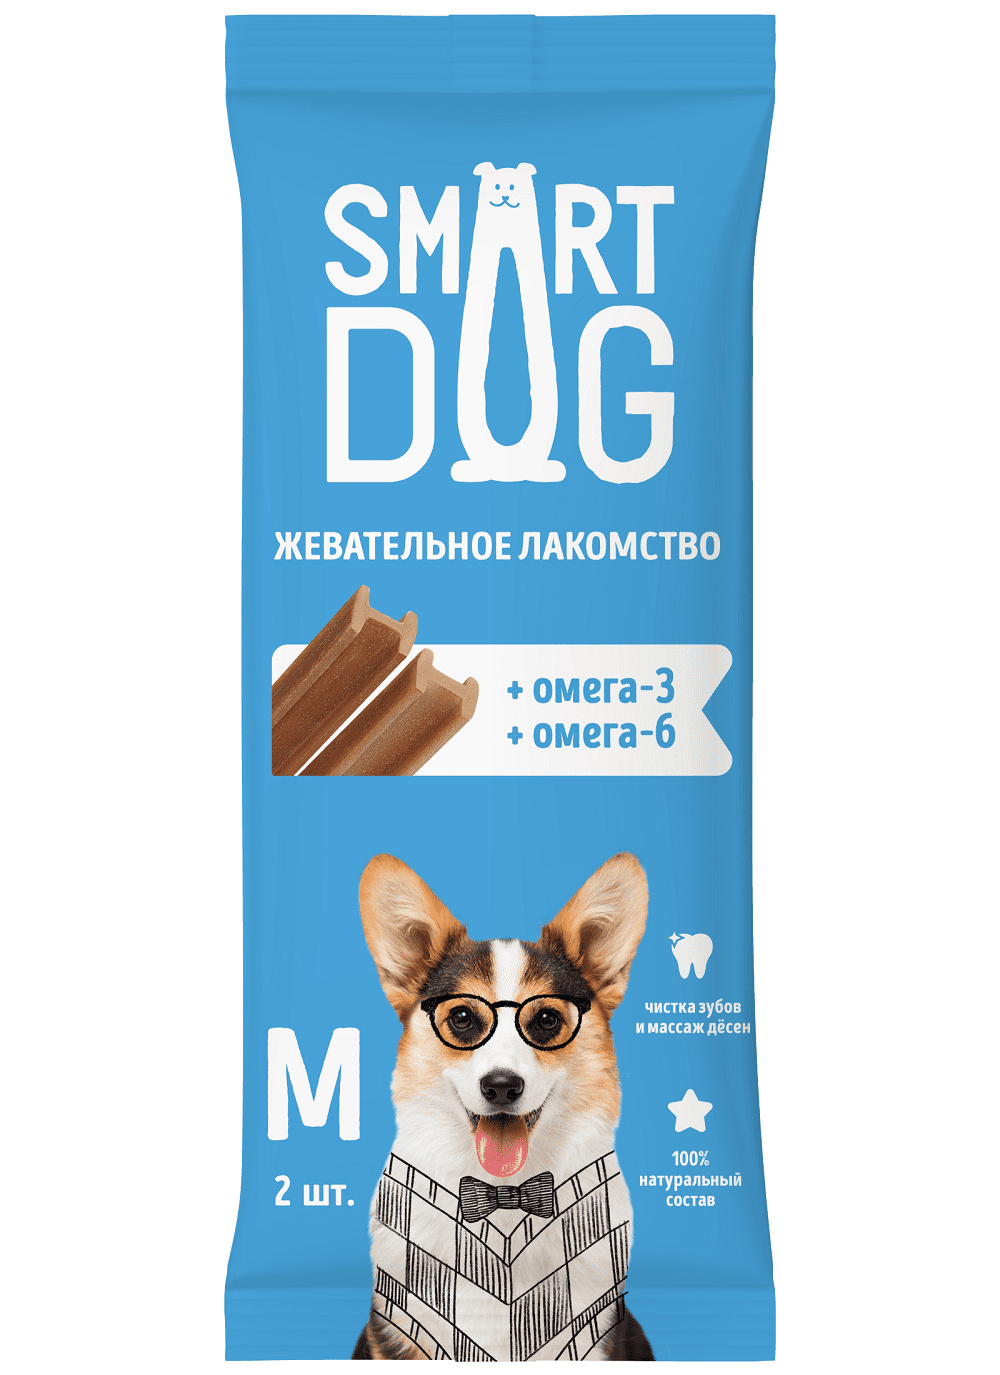 Smart Dog лакомства жевательное лакомство с омега-3 и -6 для собак и щенков (36 г)